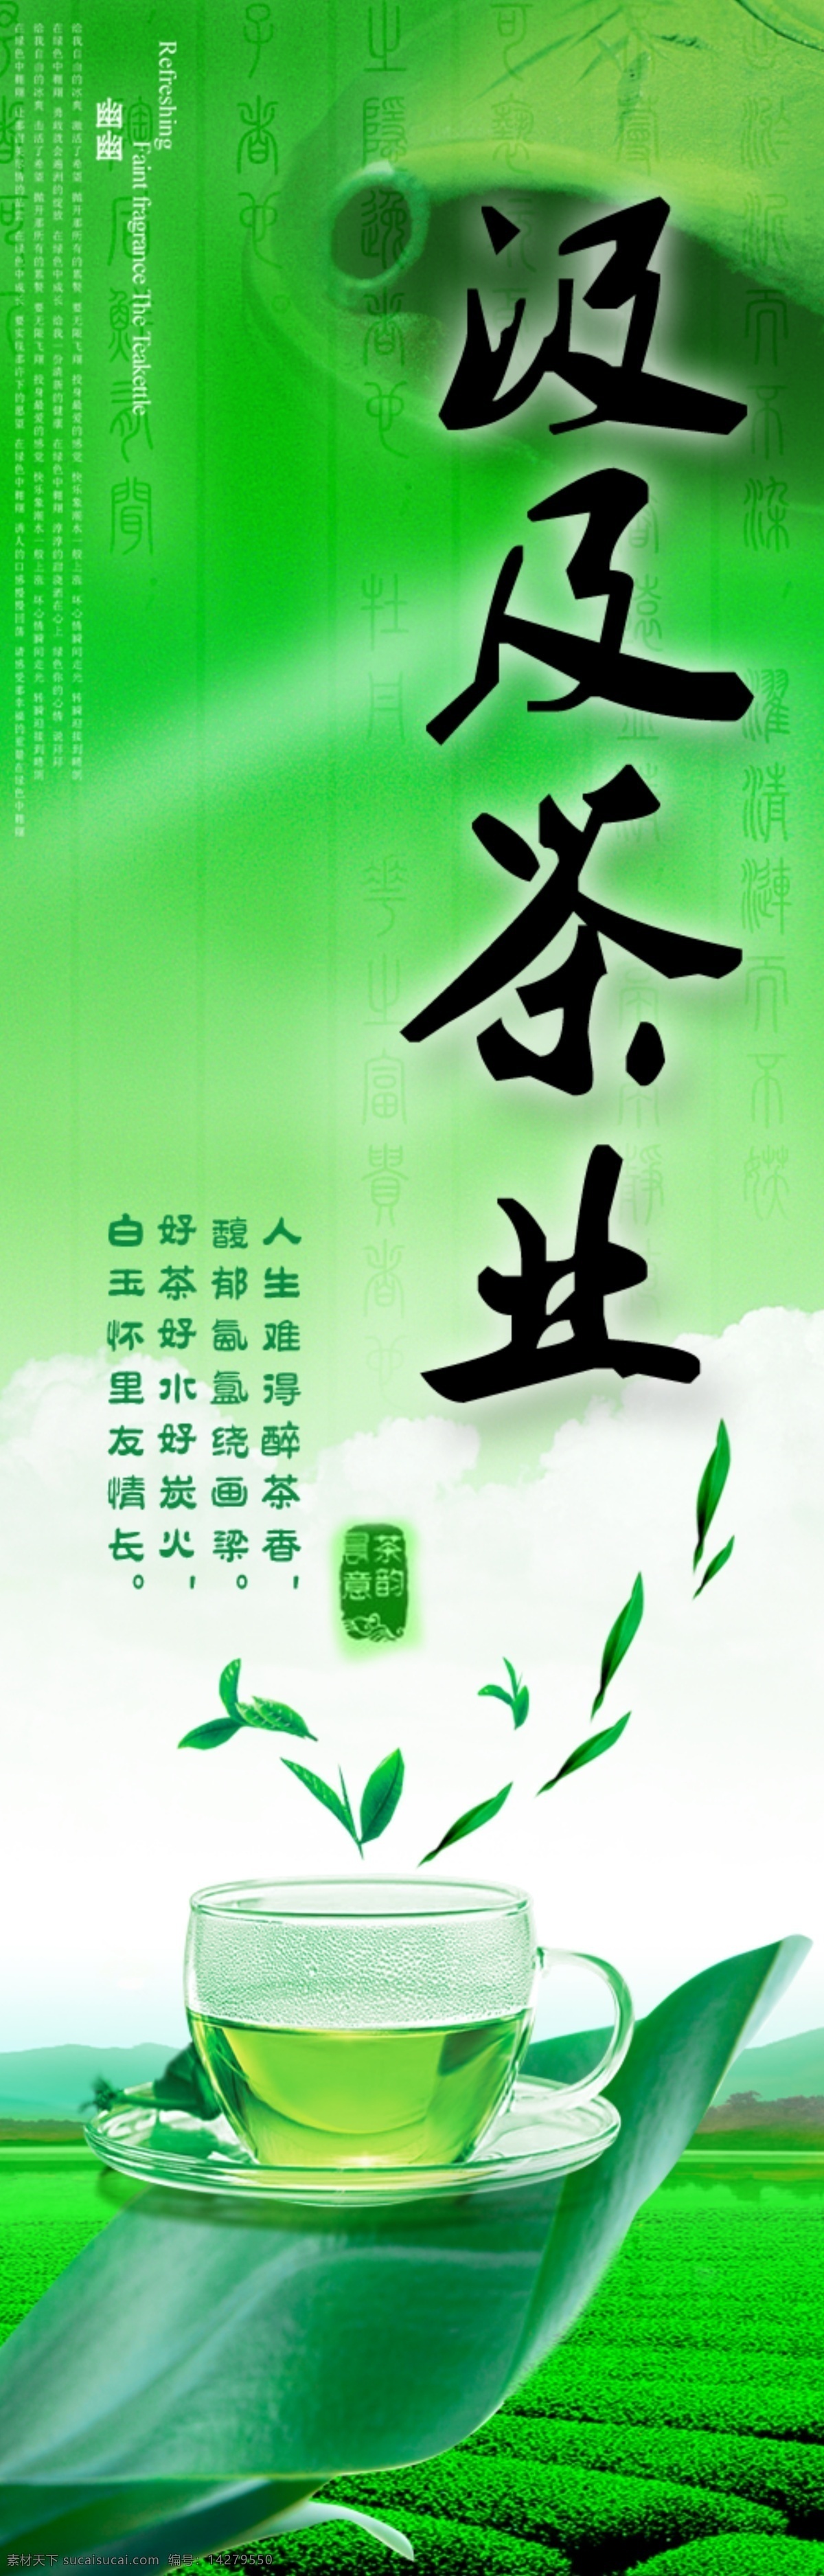 茶 茶叶 茶叶海报 广告设计模板 绿色 清凉海报 源文件 海报 模板下载 其他海报设计